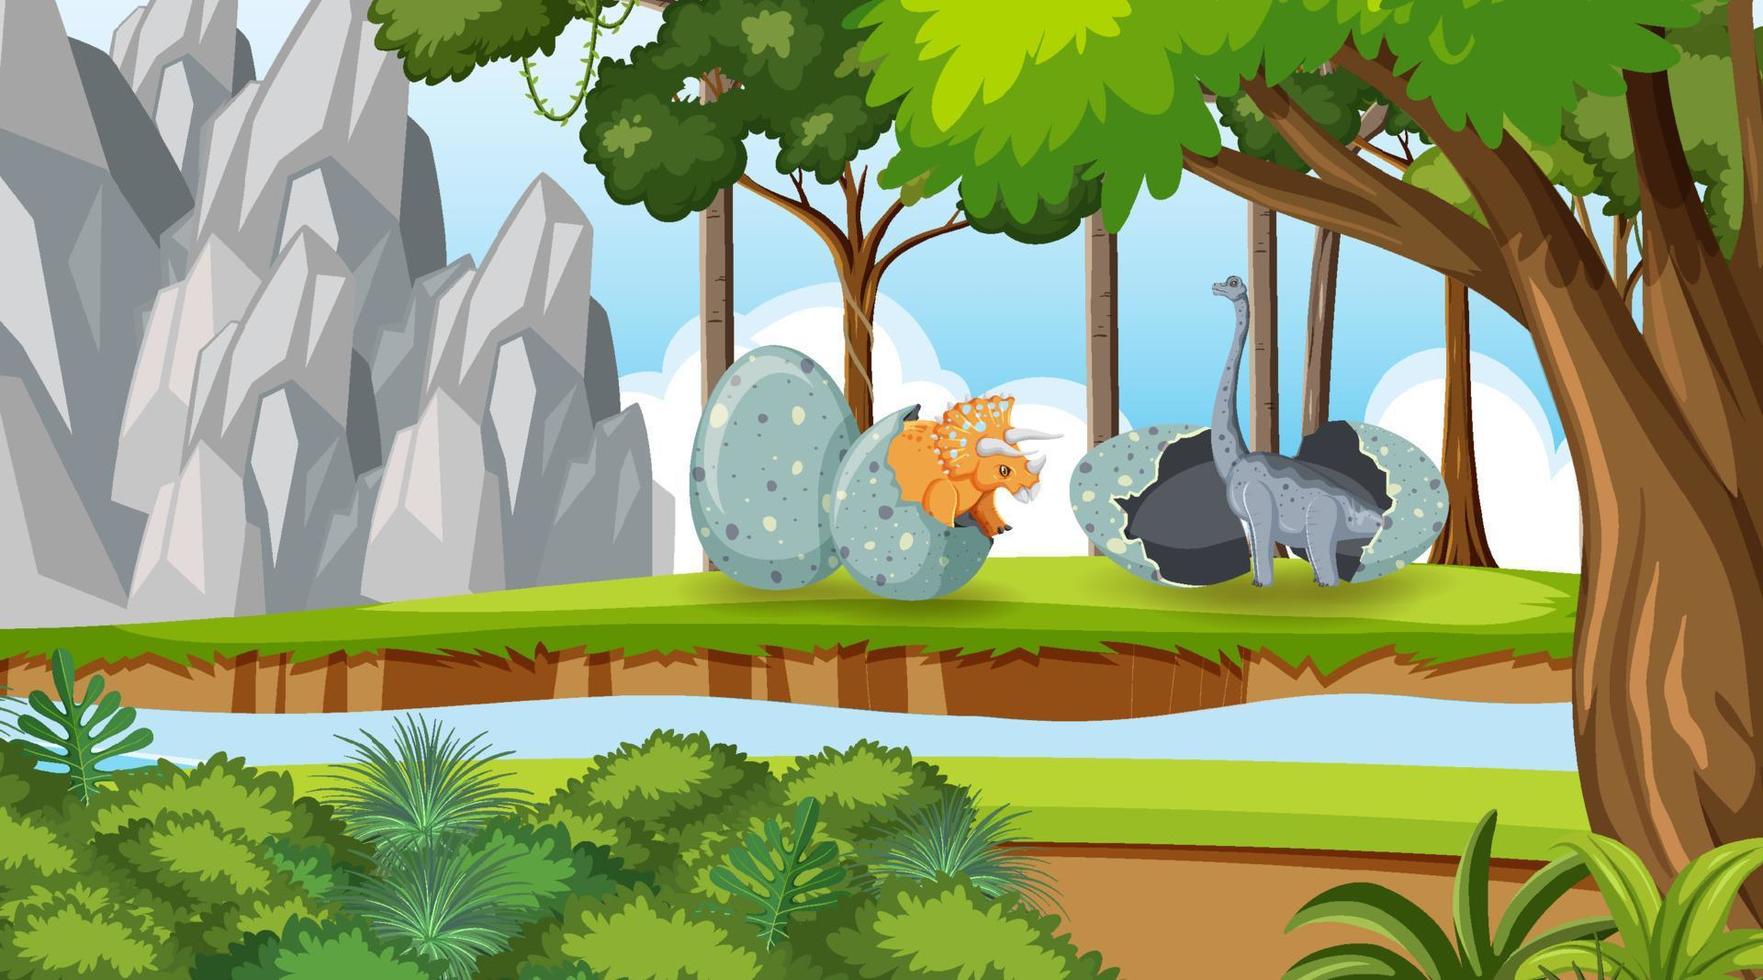 scena della natura con alberi sulle montagne con dinosauro vettore